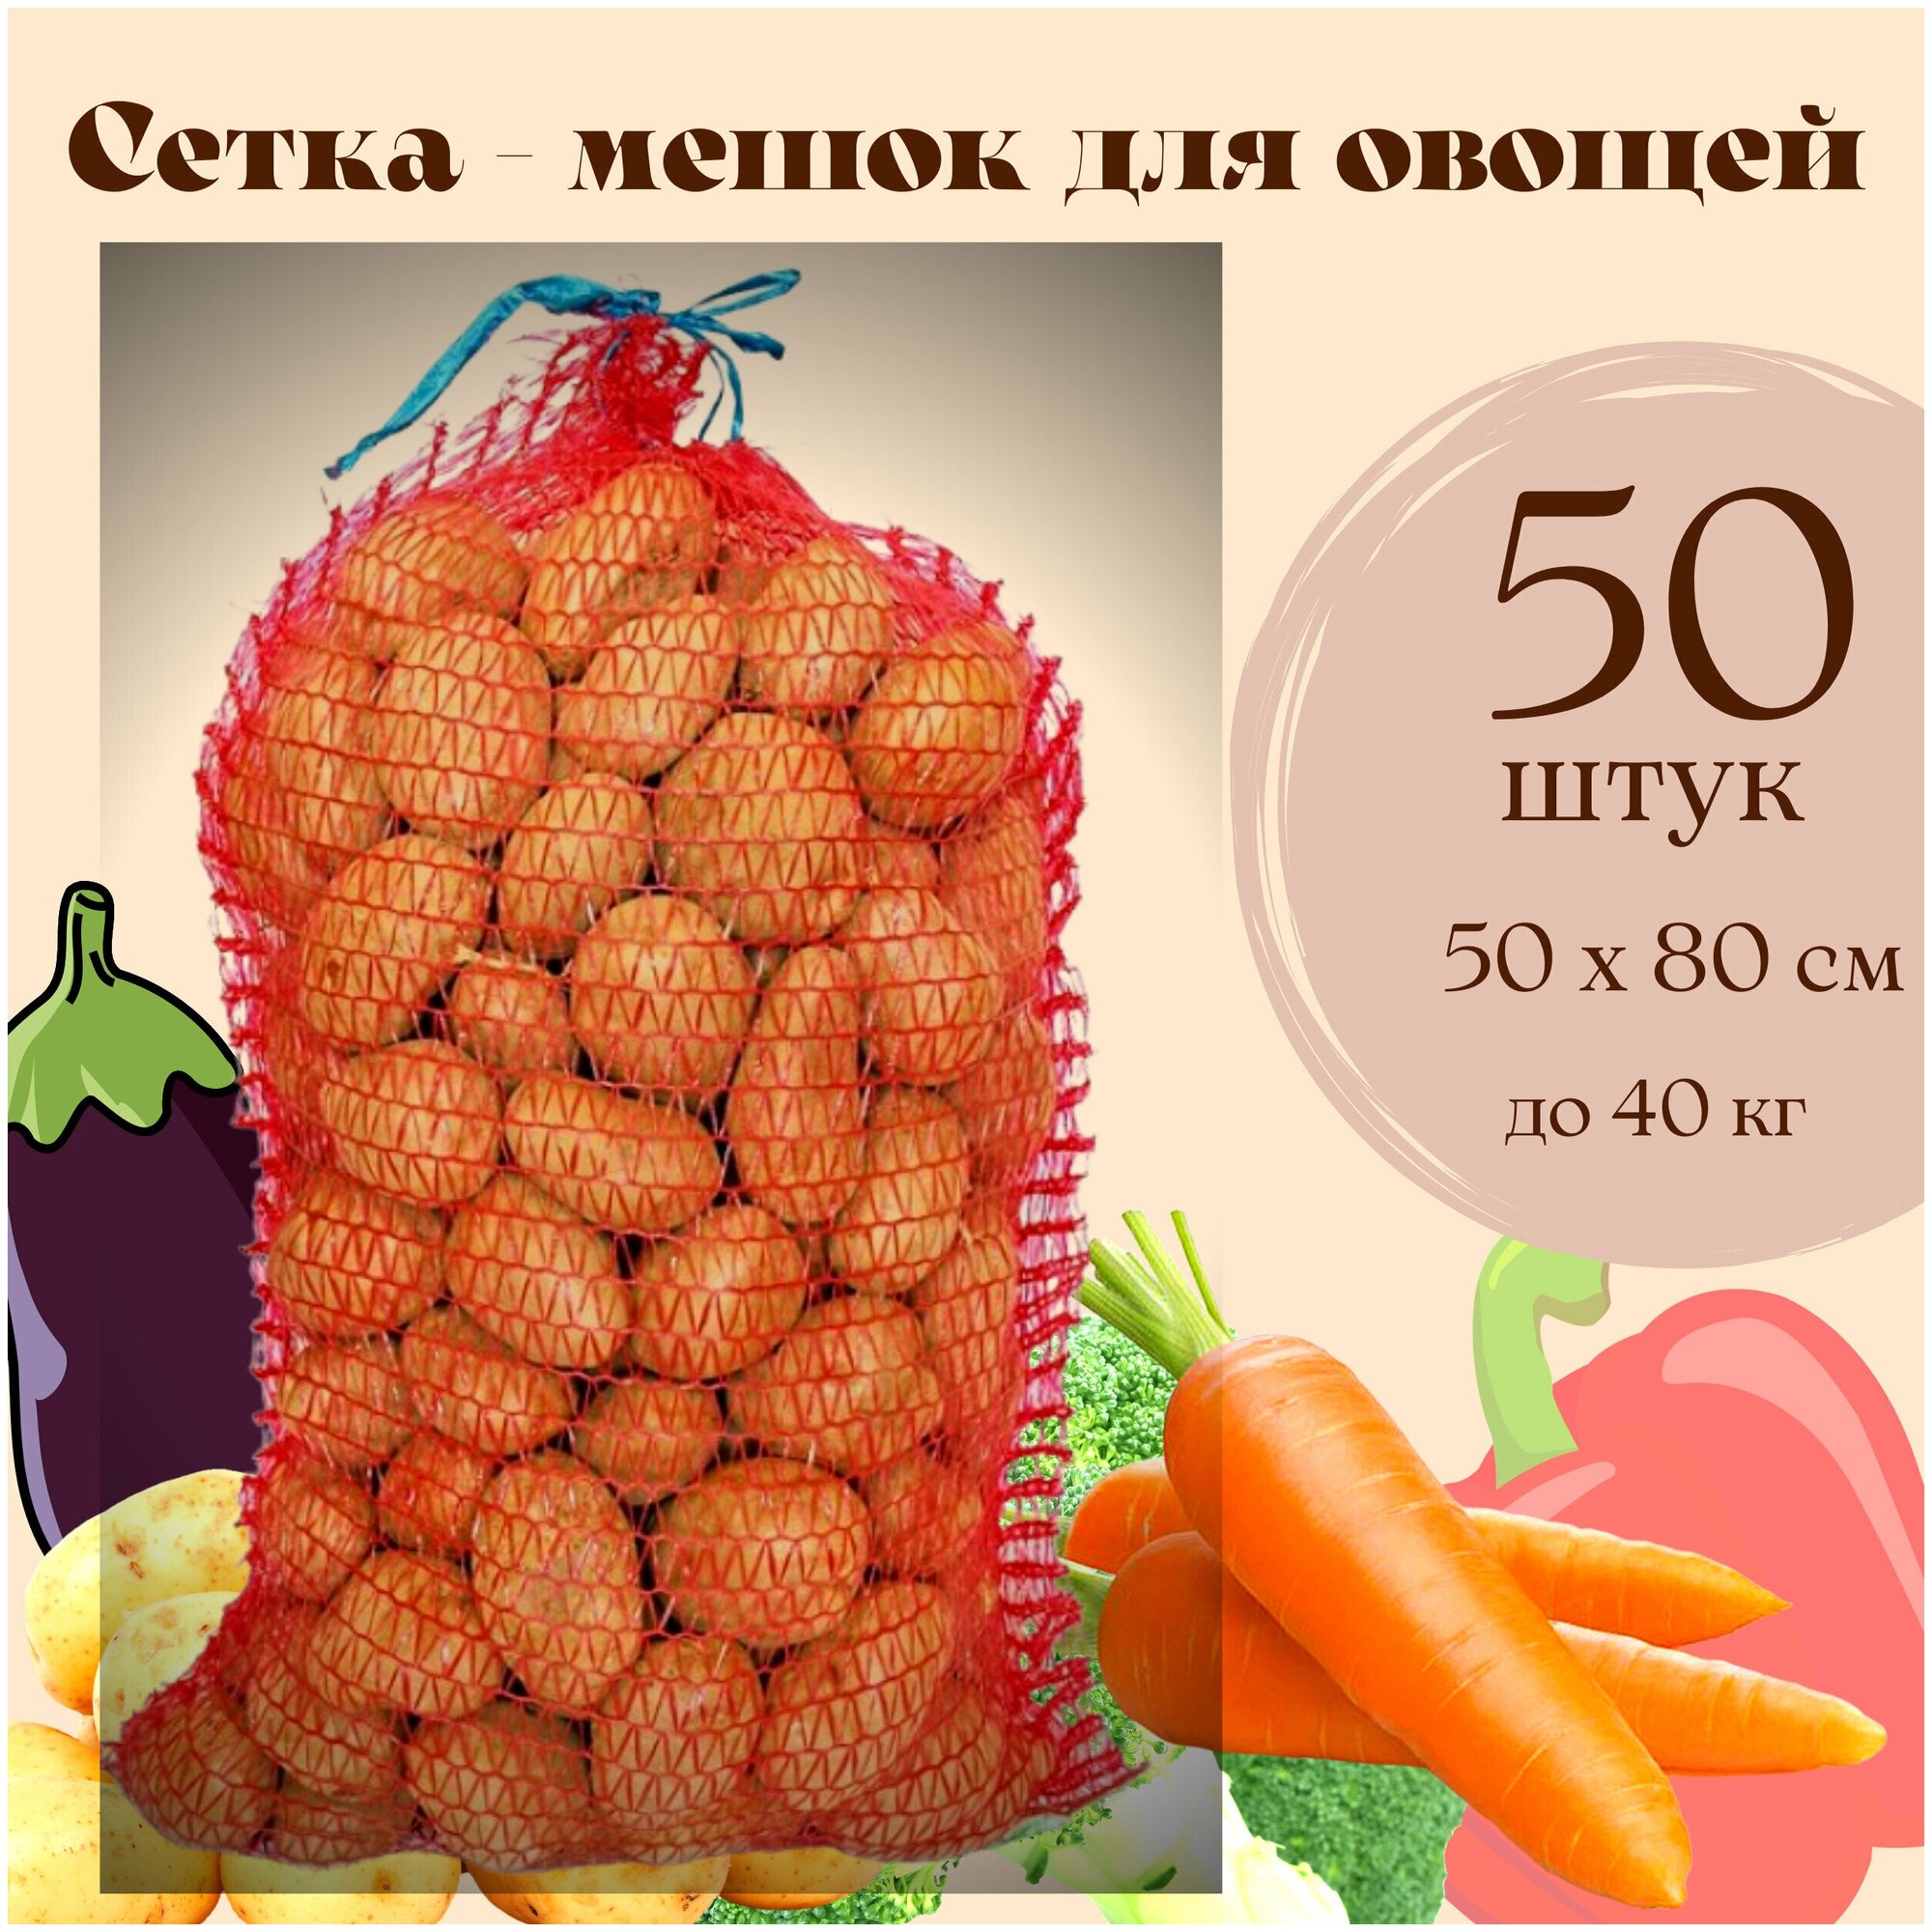 Сетка - Мешок для овощей до 40 кг, для урожая и хранения картошки, лука, моркови, яблок с завязками 50 х 80, 50 штук